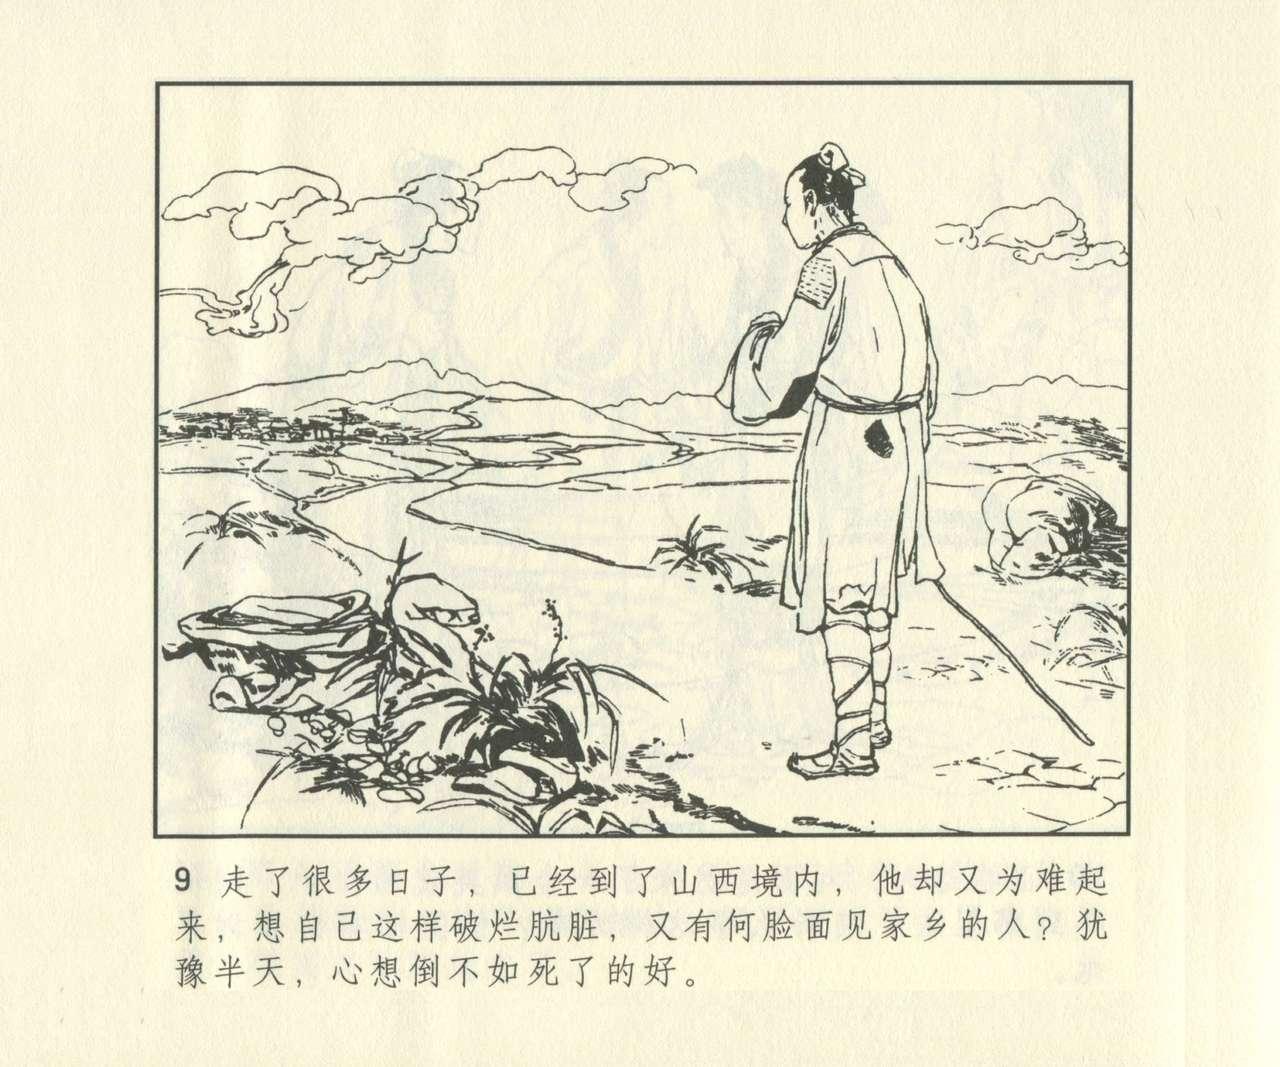 聊斋志异 张玮等绘 天津人民美术出版社 卷二十一 ~ 三十 625